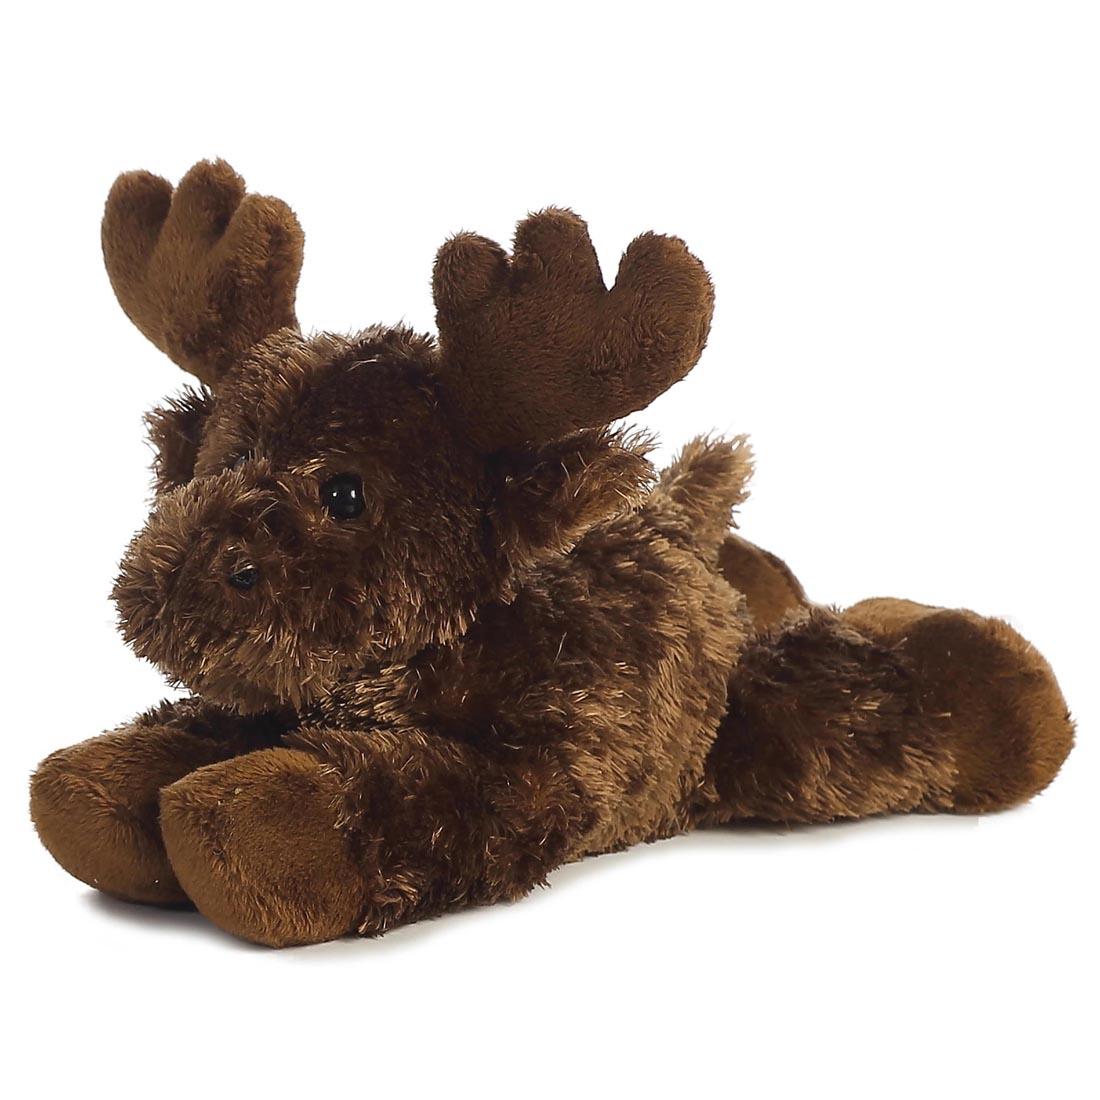 soft stuffed moose